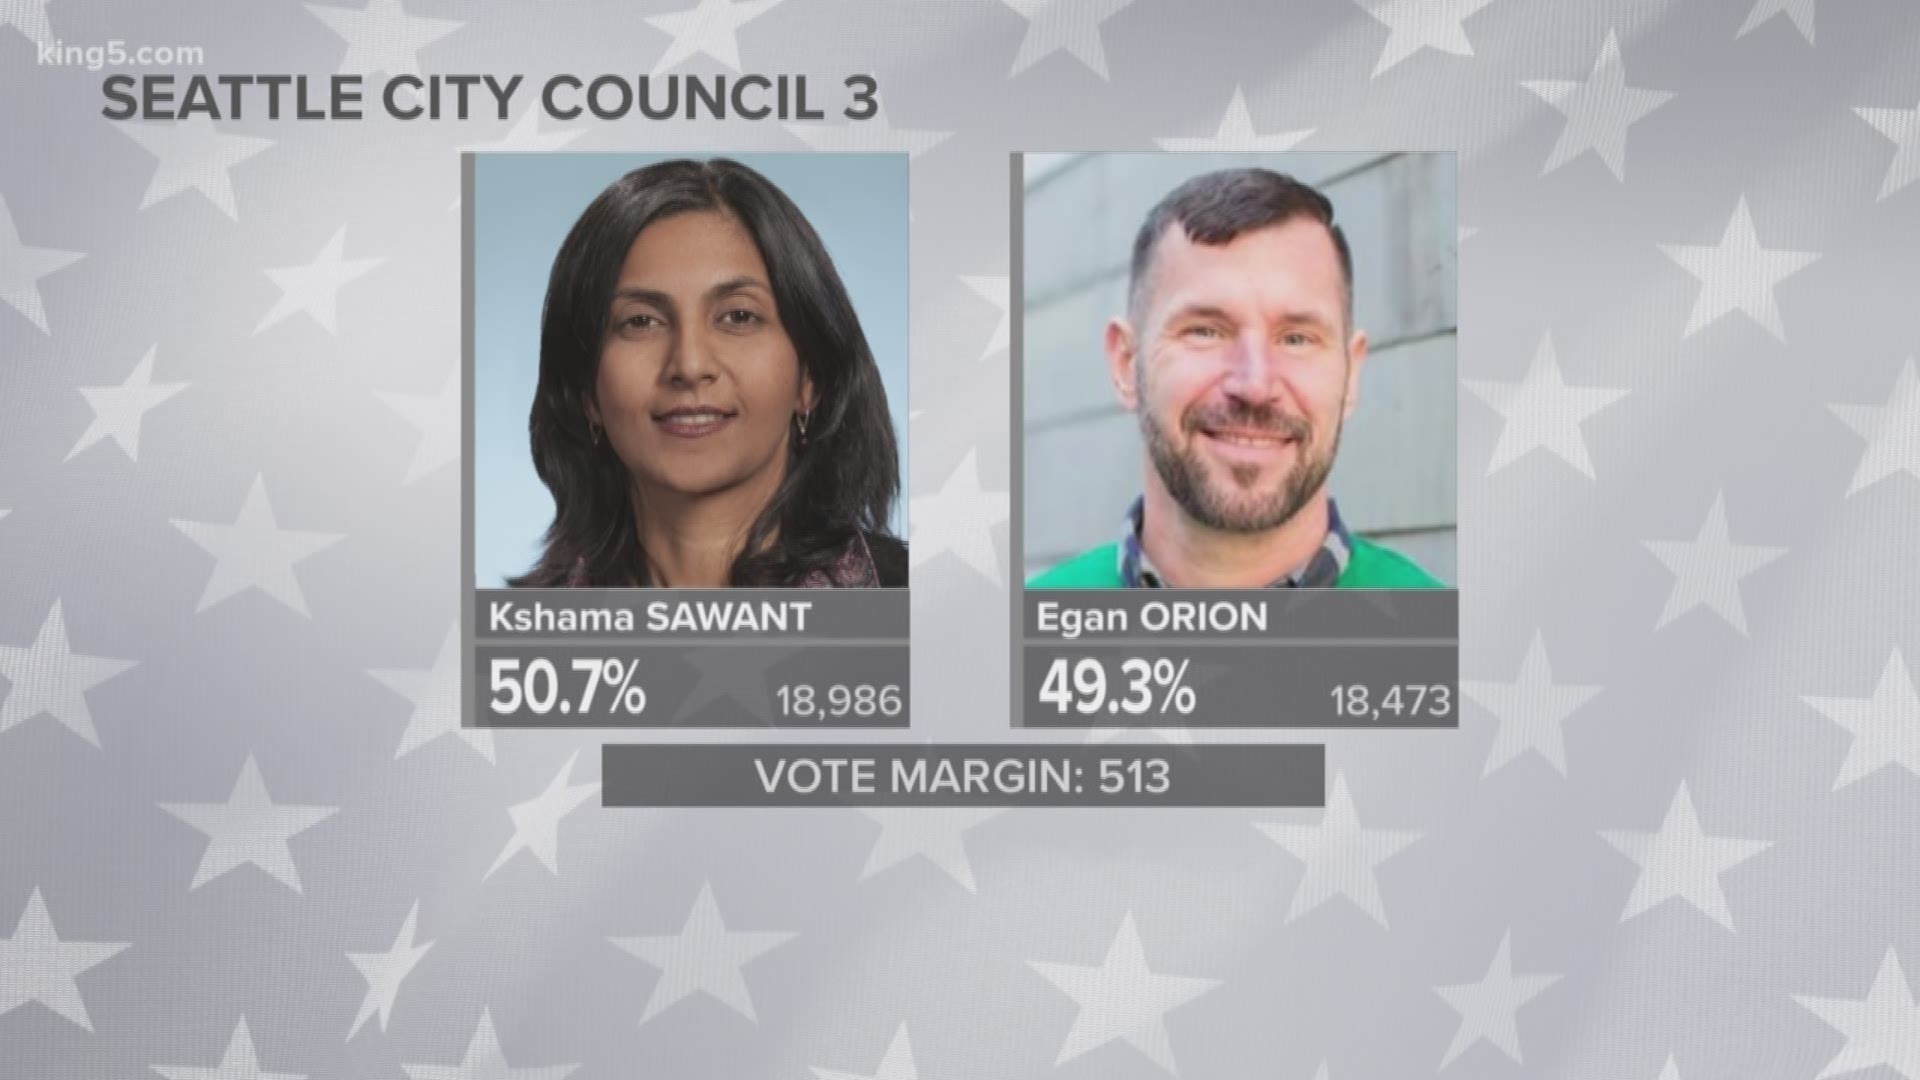 Seattle City Council District 3 race is close.